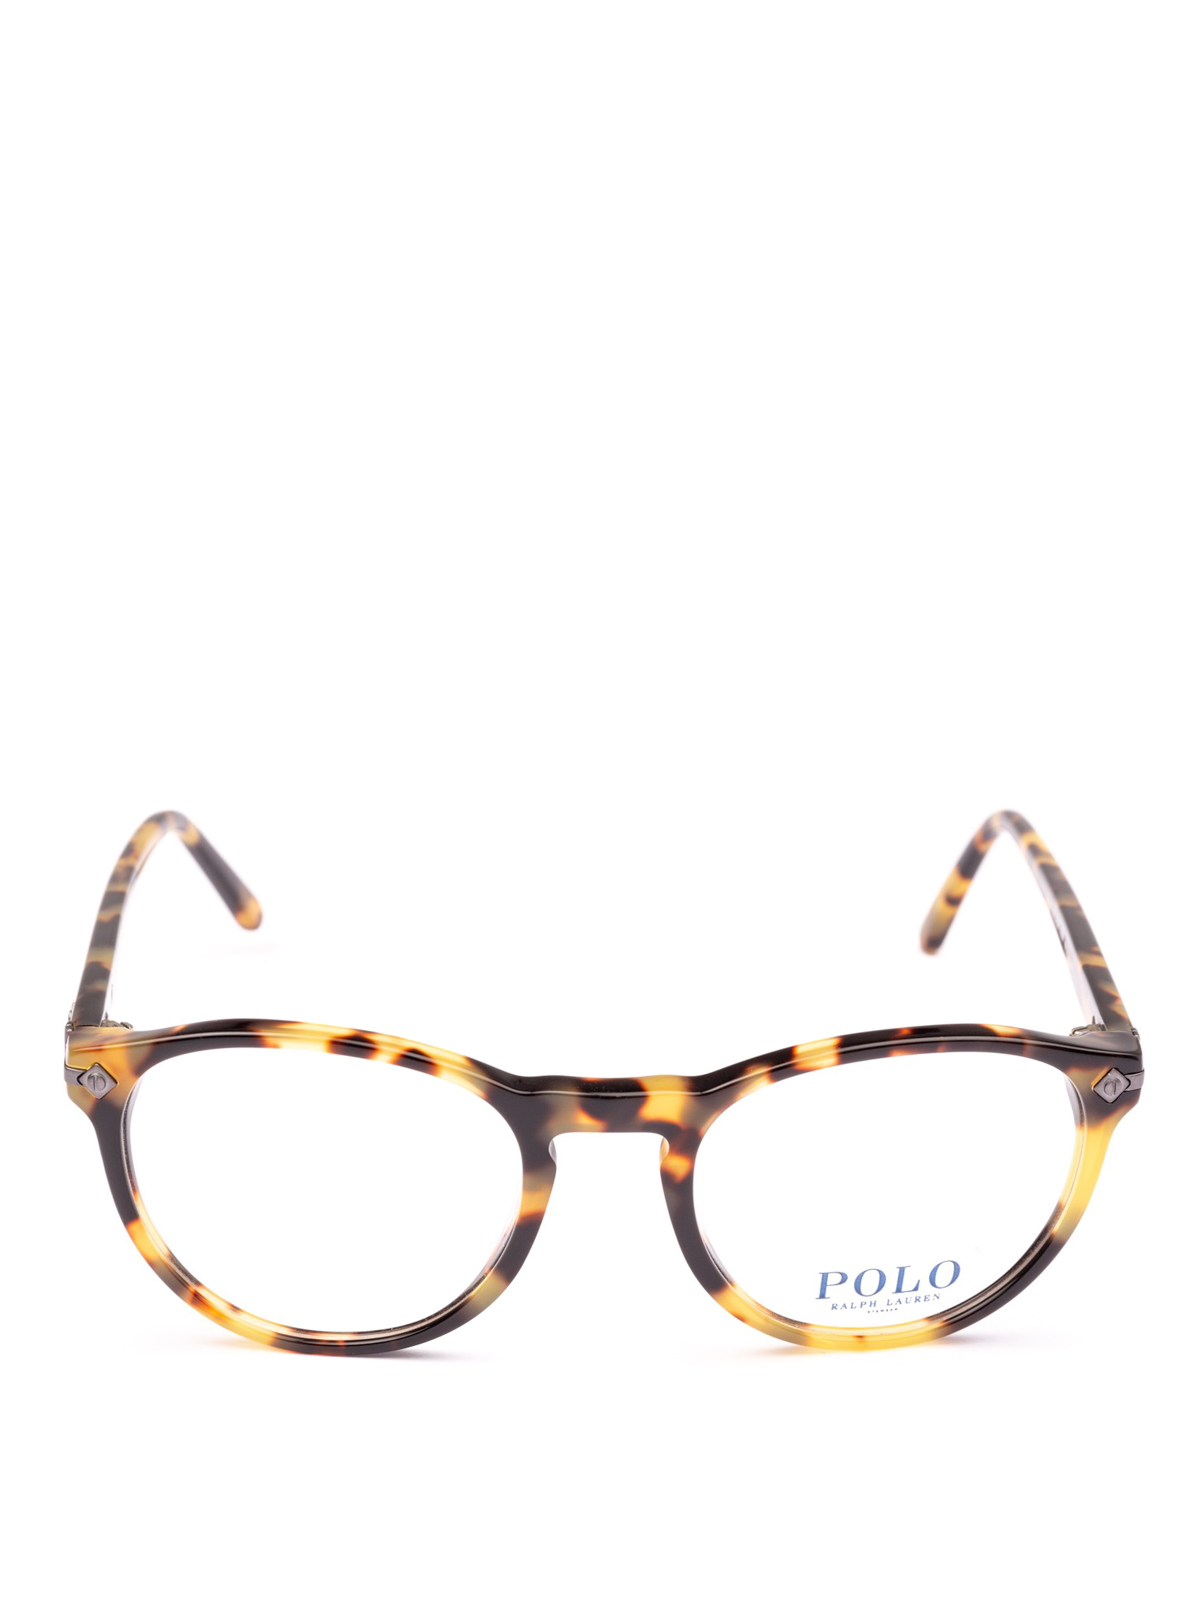 Glasses Polo Ralph Lauren - Tortoiseshell acetate frame oval glasses -  PH21505004